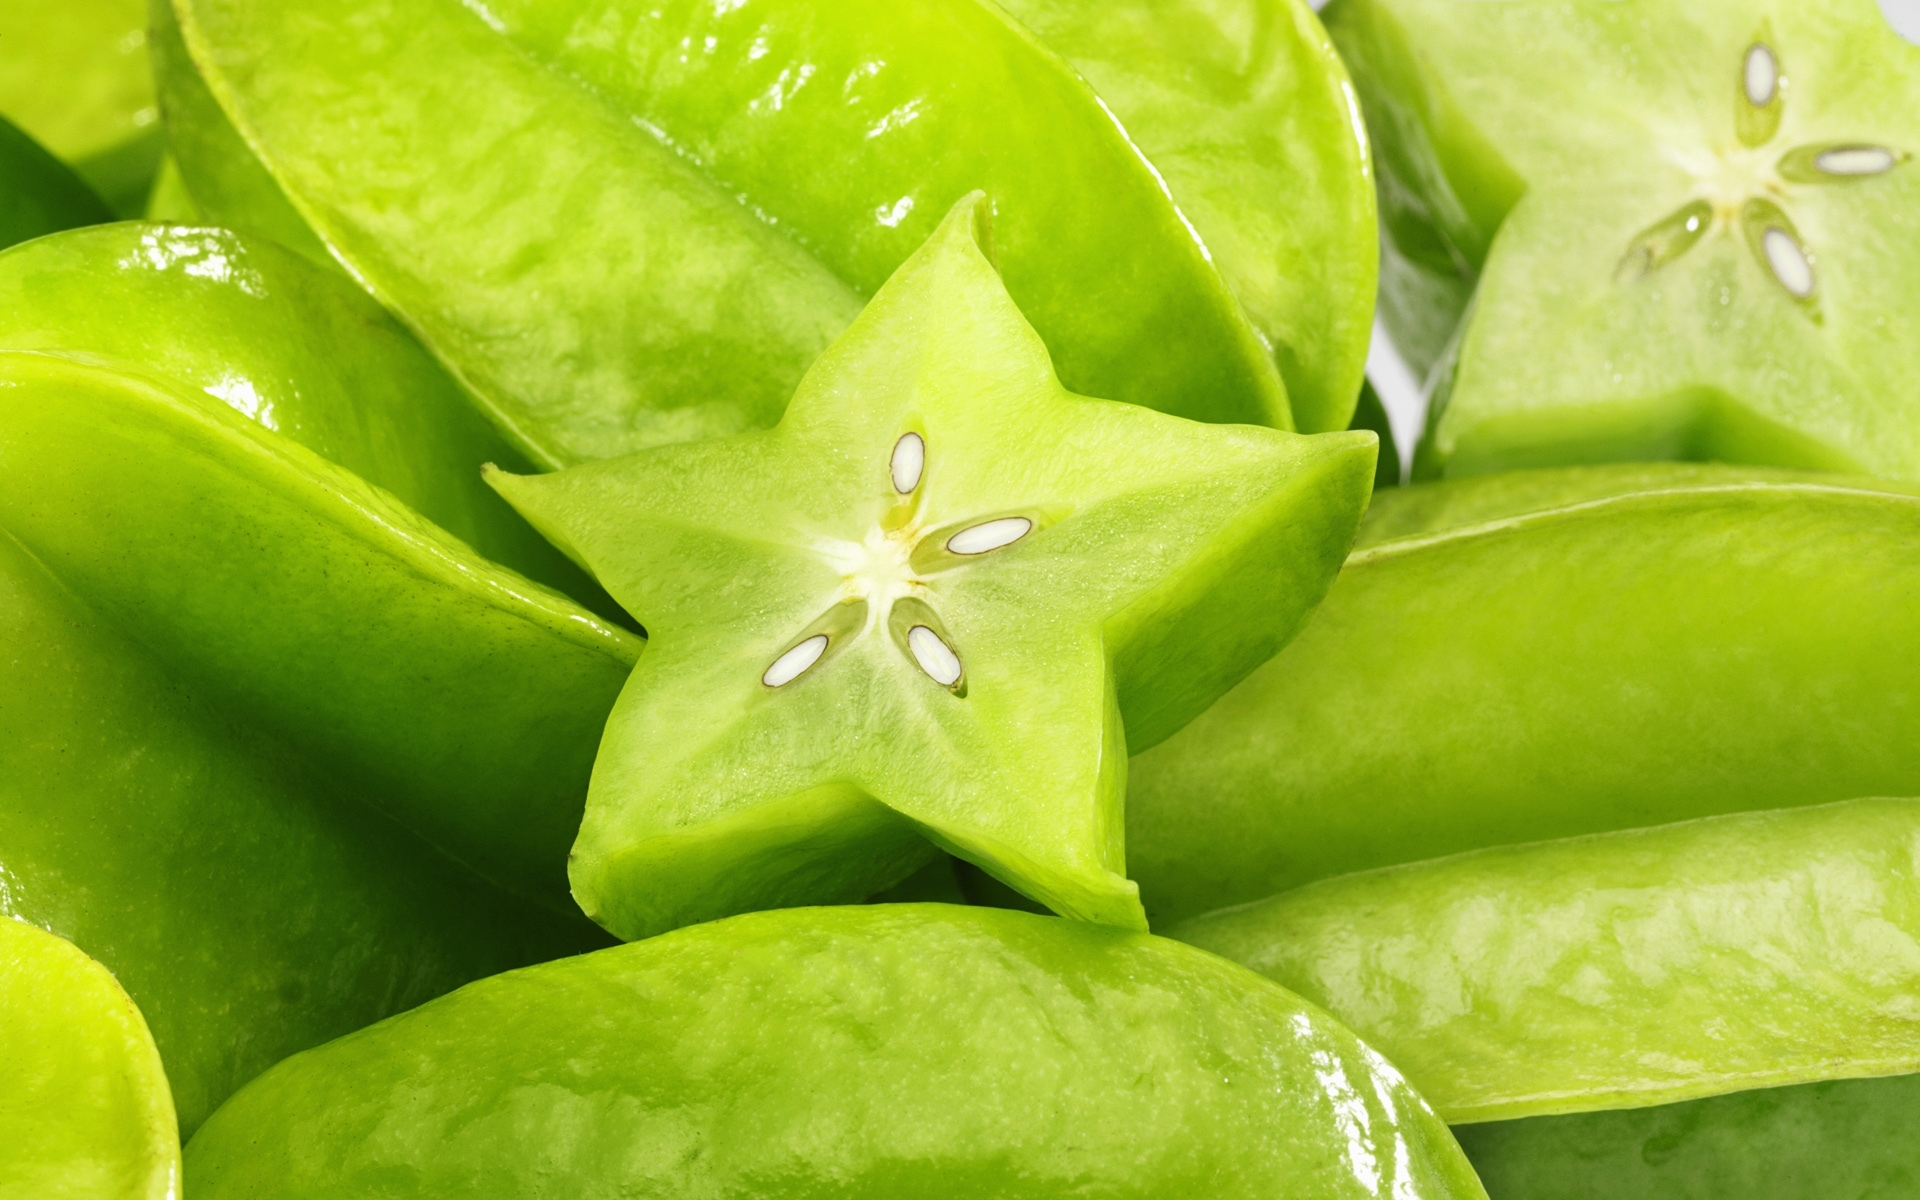 Green Star Fruit | B&G | Pinterest | Star